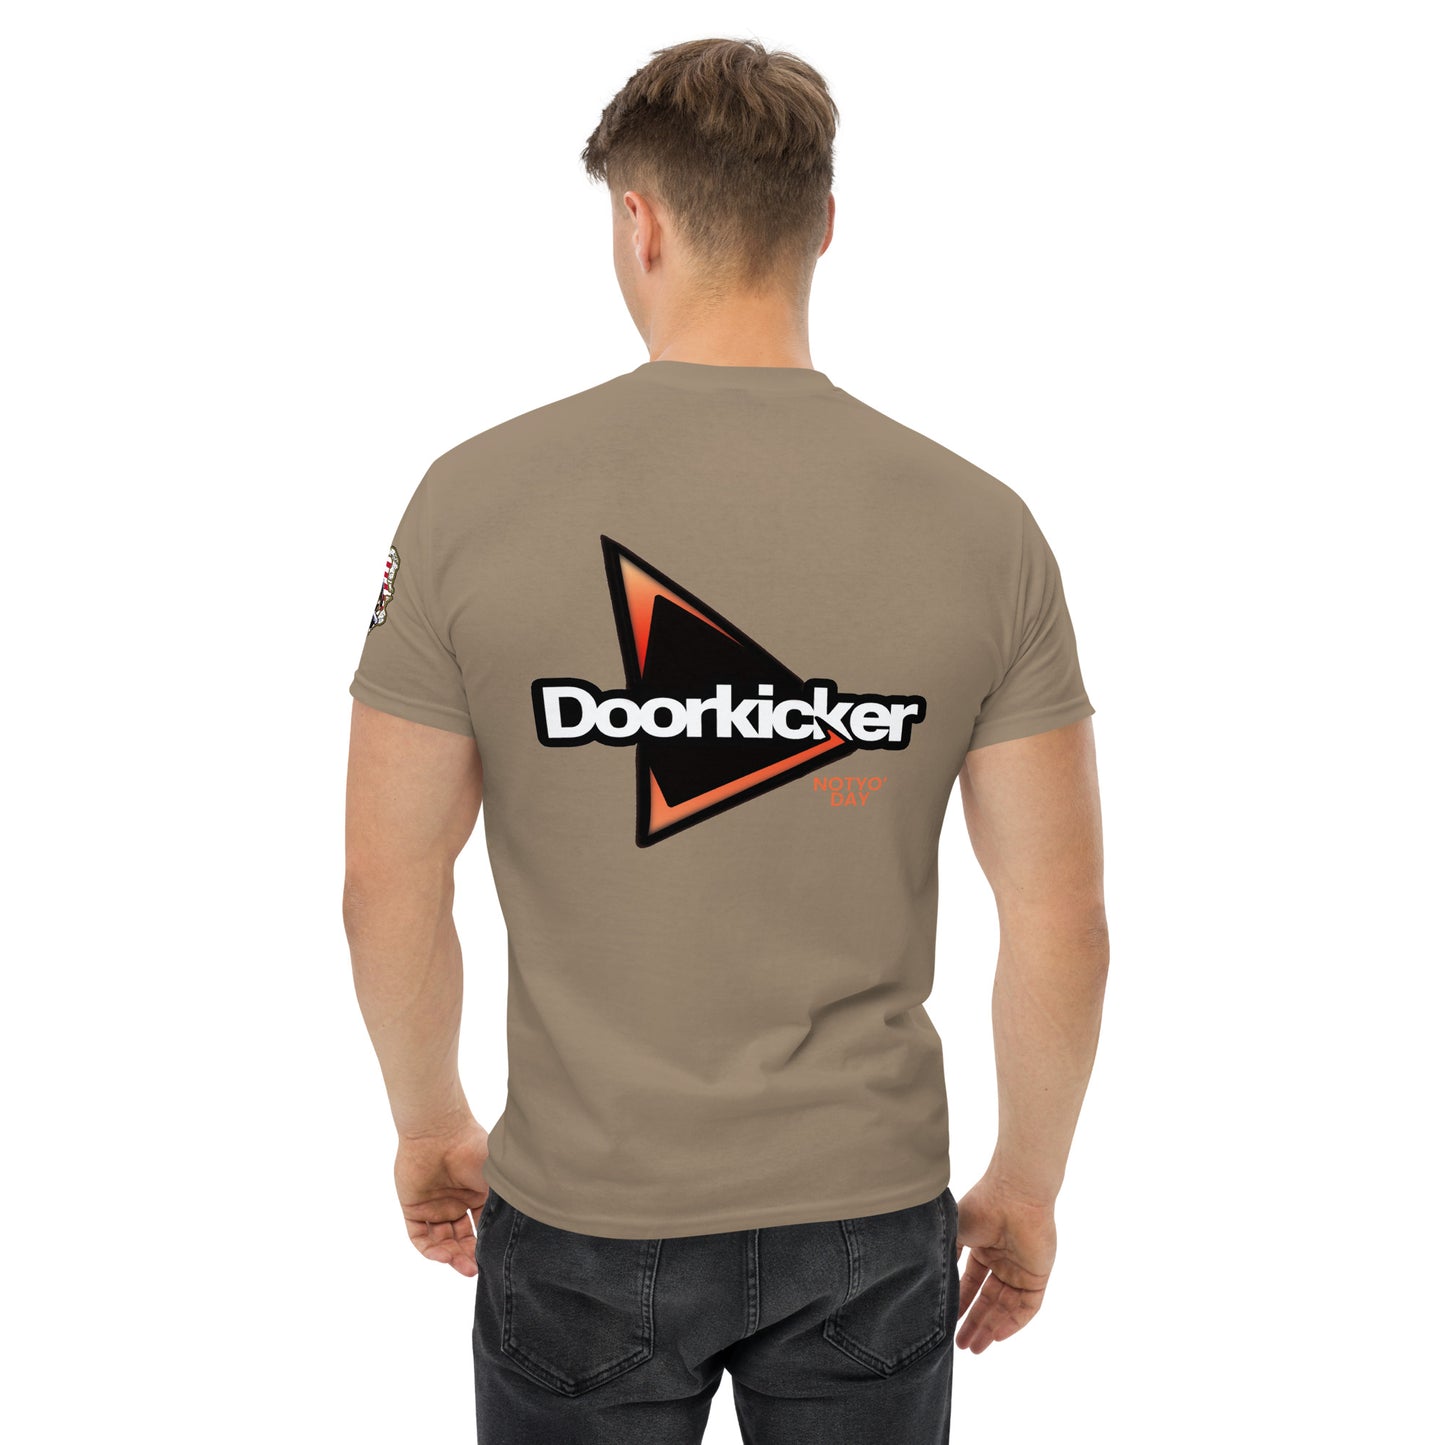 Doorkicker-Notyo’ Day